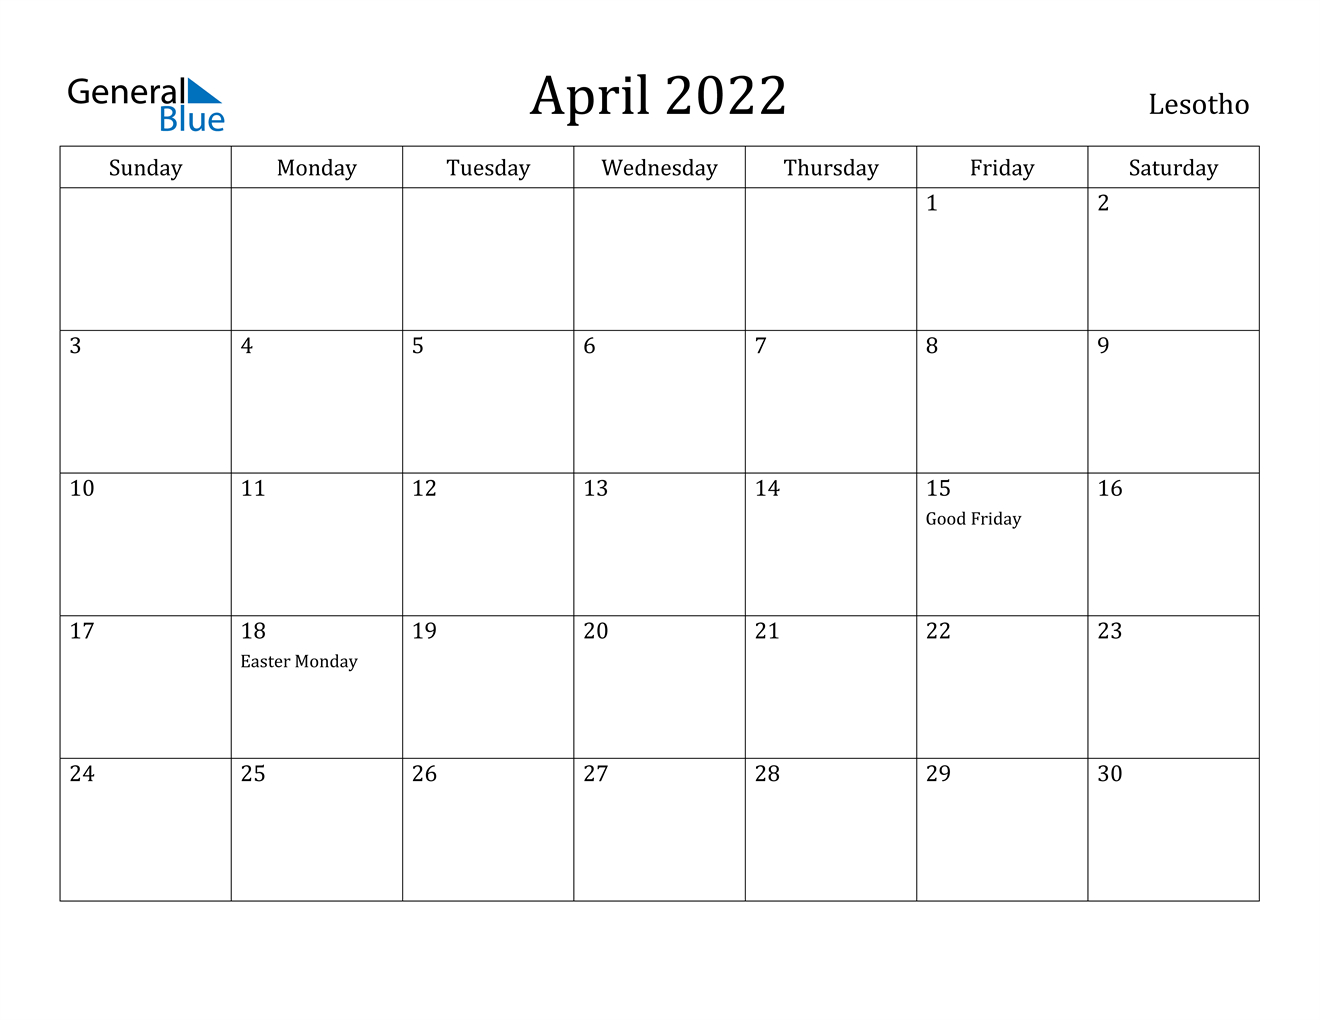 April 2022 Calendar - Lesotho